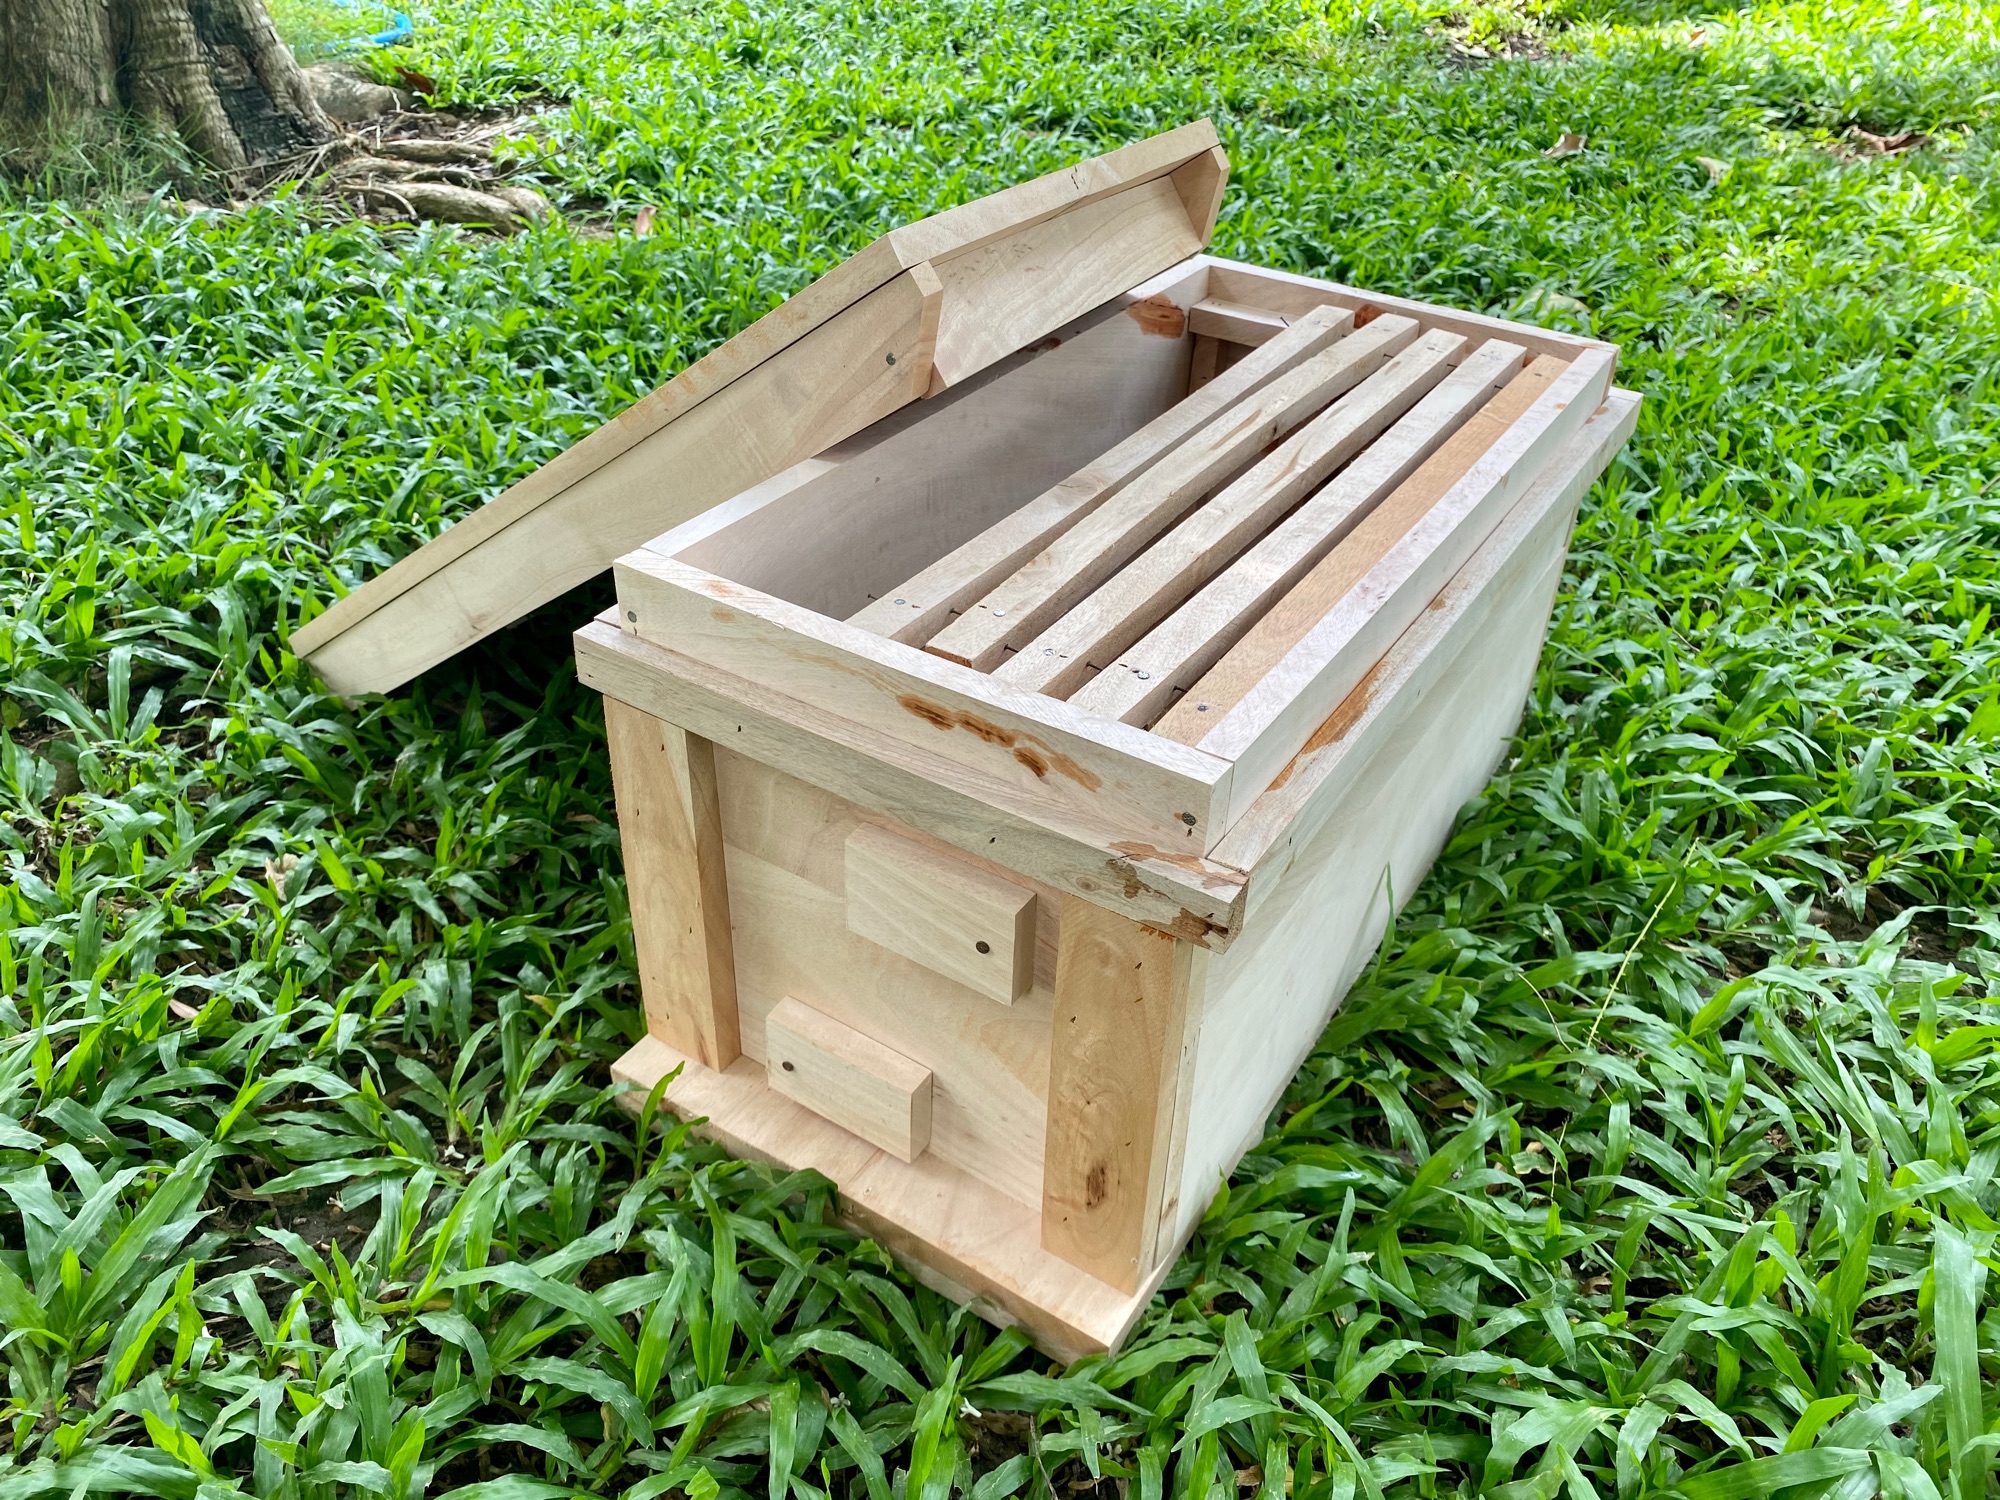 กล่องเลี้ยงผึ้งโพรง พร้อมคอนไม้ 5 อัน ทำจากไม้กระท้อนพร้อมเข้าลิ้นอย่างดี ขนาด กว้าง 27cm ยาว 60cm สูง 30cm ความหนาของไม้ 1.5cm